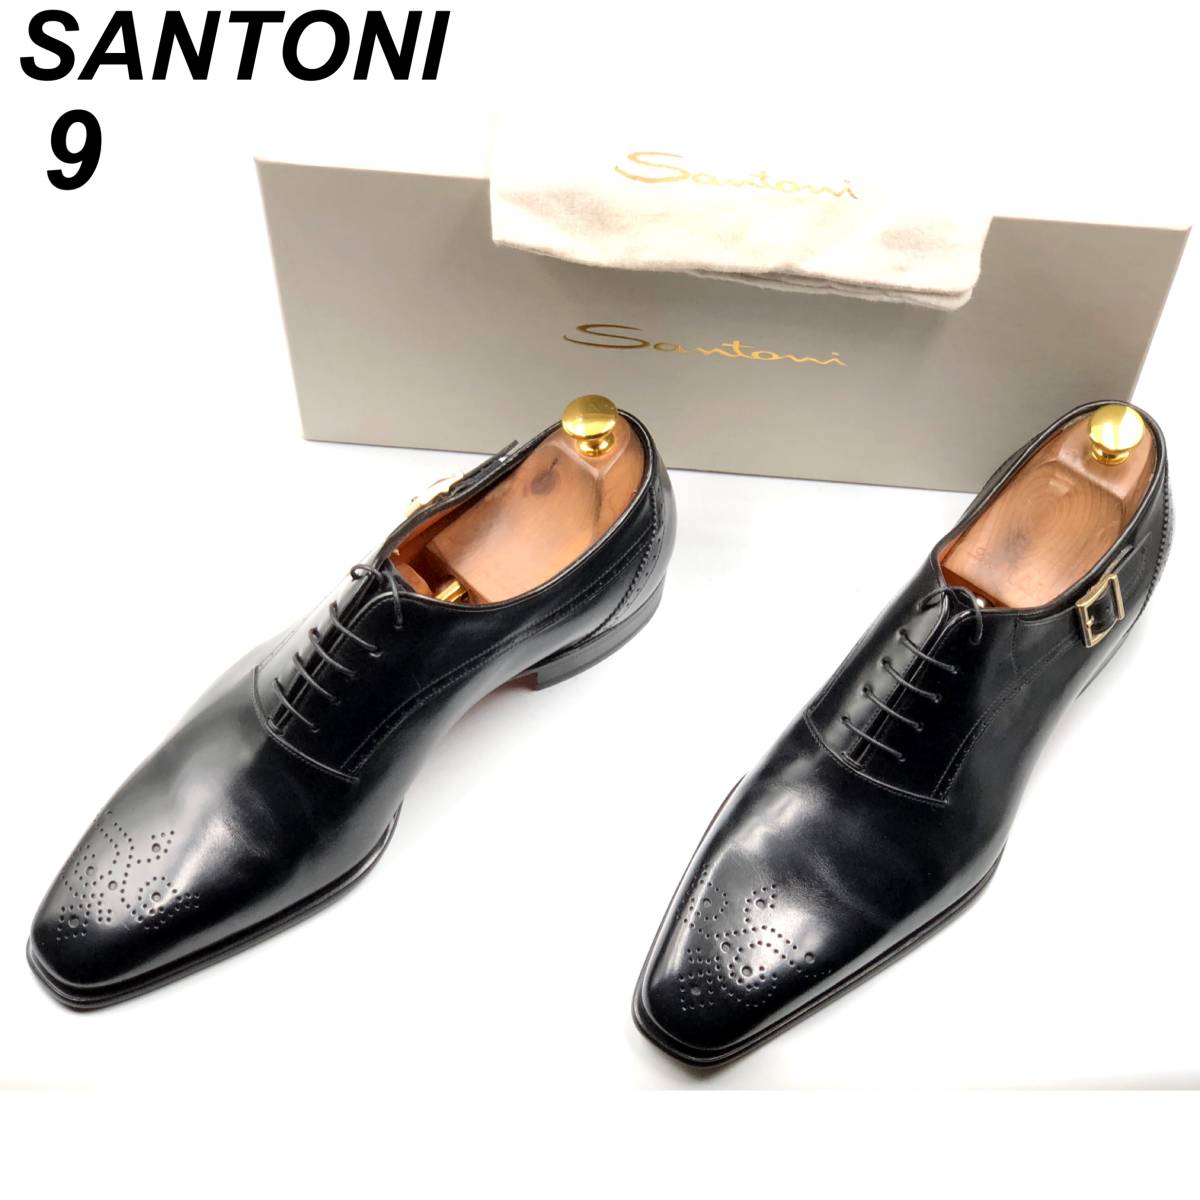 即決 未使用 SANTONI サントーニ 27cm 9 16279 メンズ レザーシューズ プレーントゥ 黒 ブラック 箱 保存袋付 革靴 皮靴 ビジネスシューズ